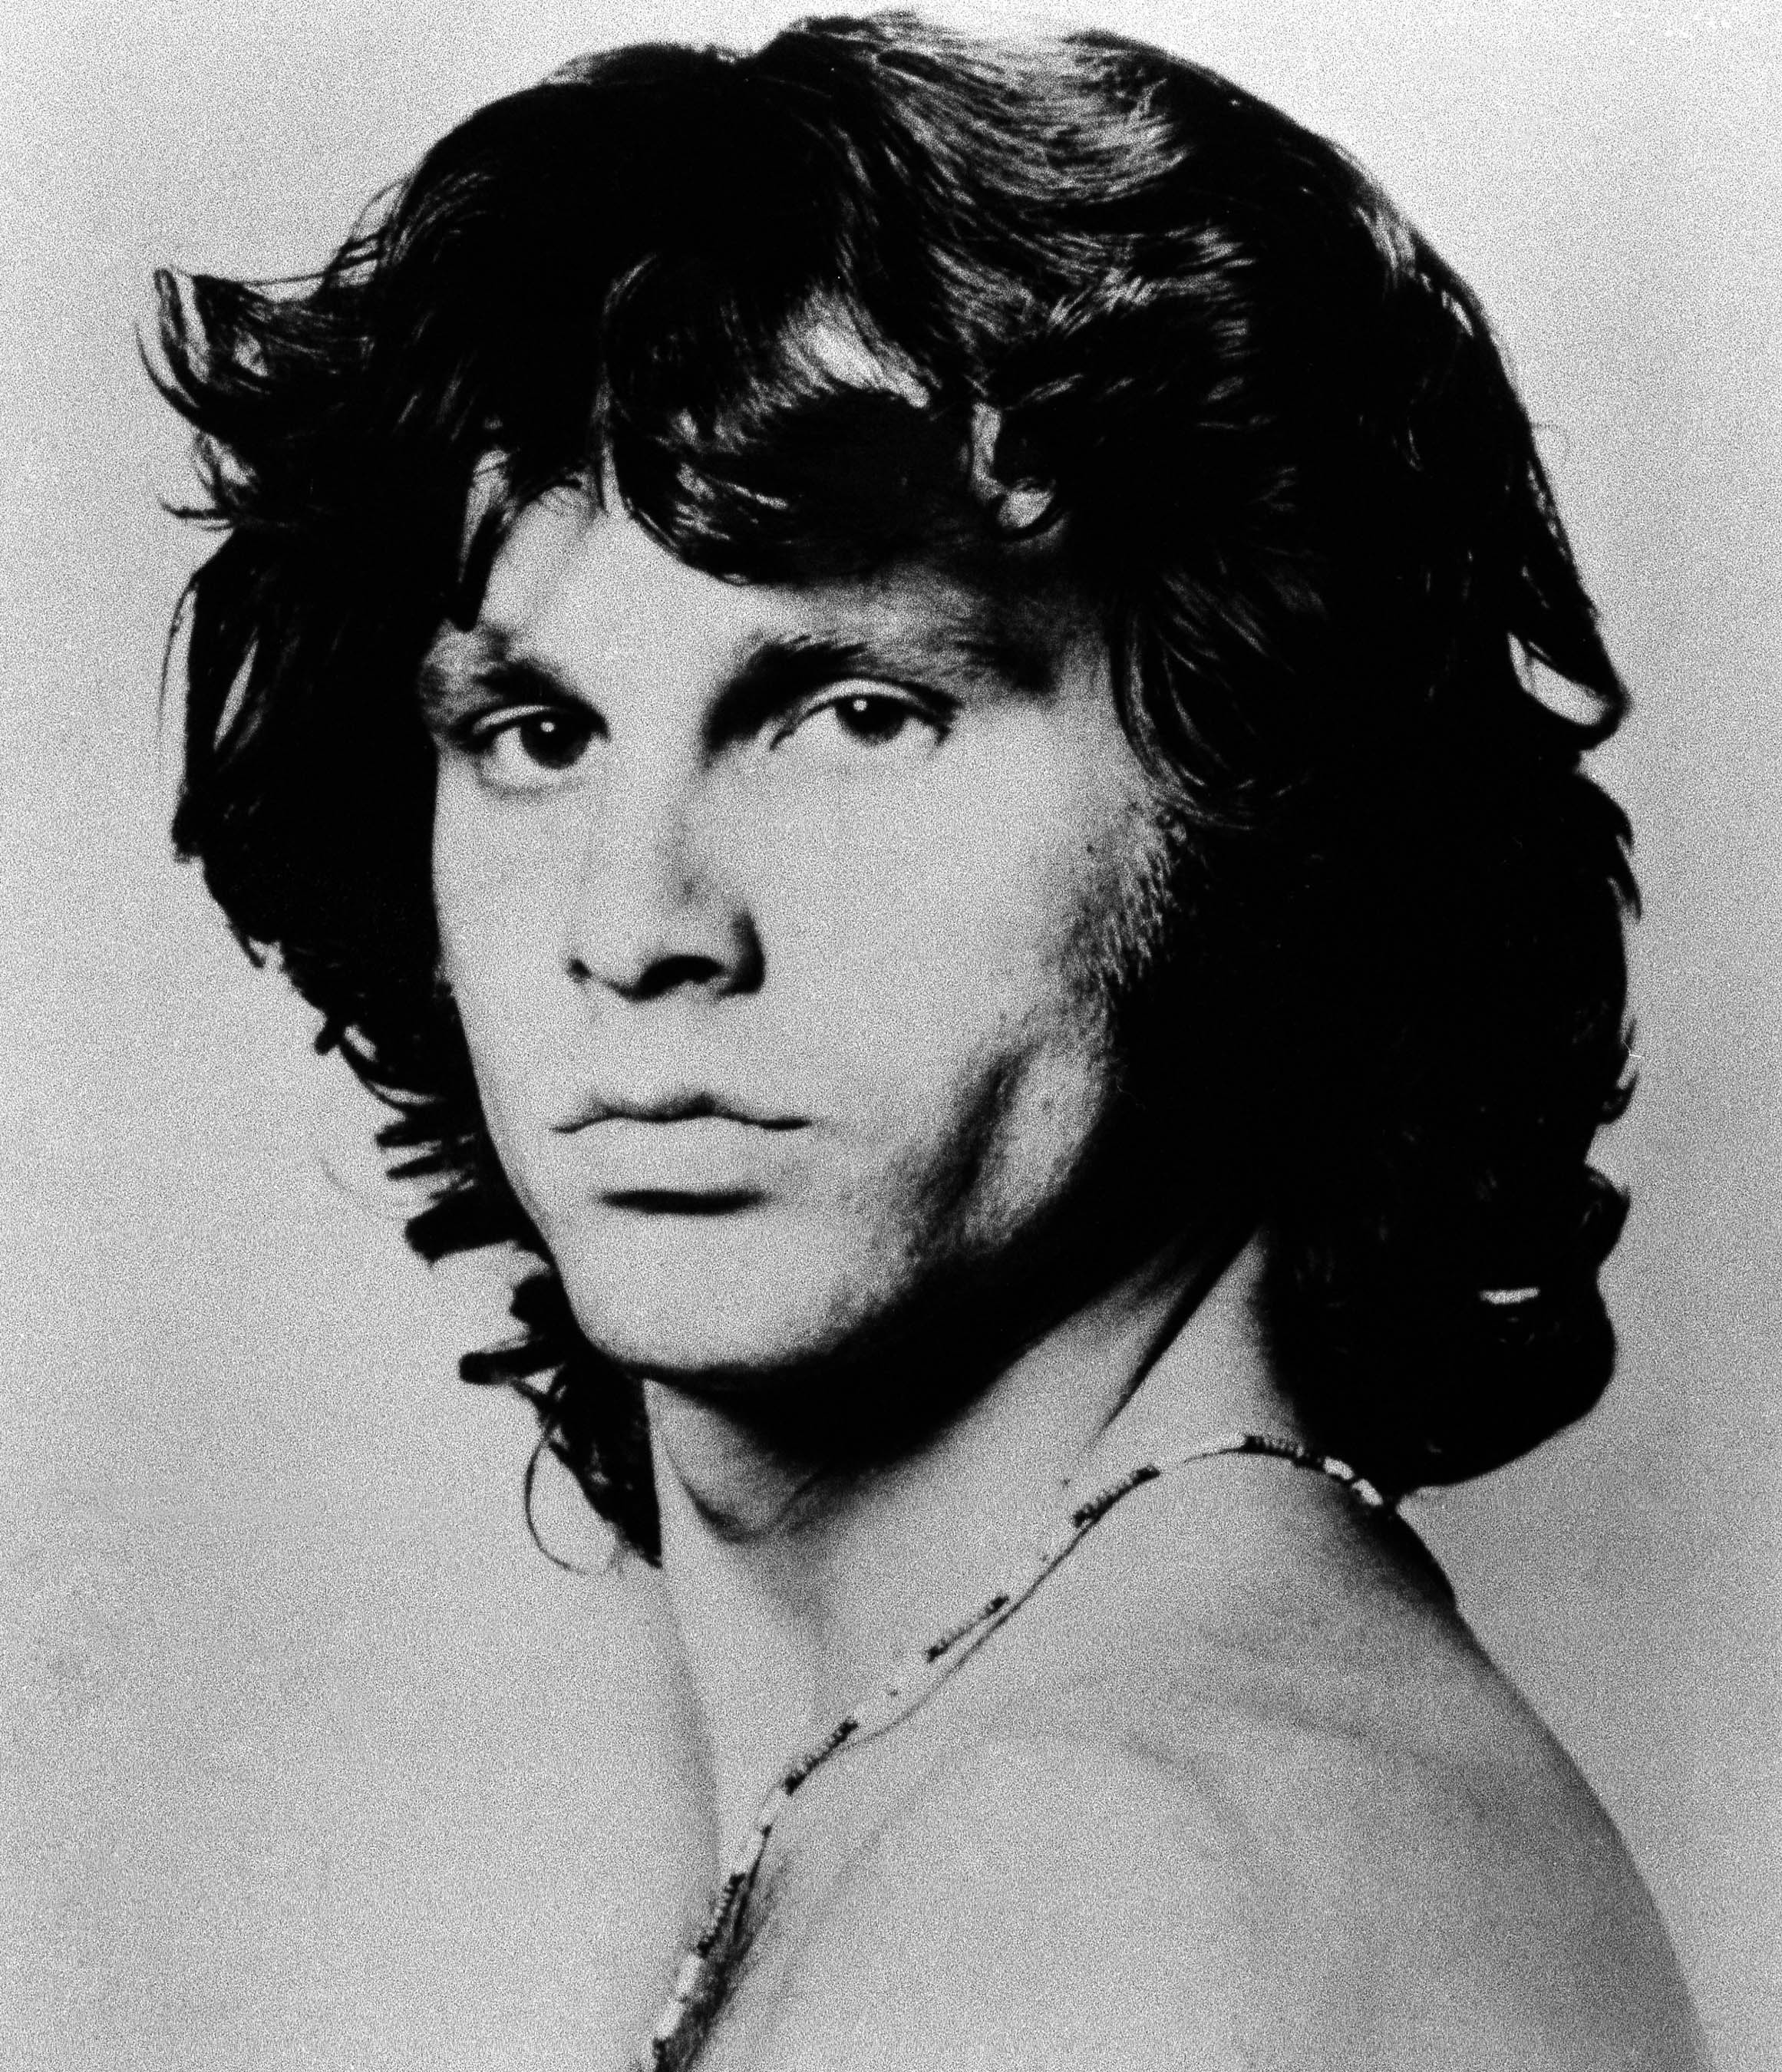 Джим моррисон википедия. Джим Моррисон. Jim Morrison 1971. Doors группа Джимм Моррисон. Джим Моррисон фото.